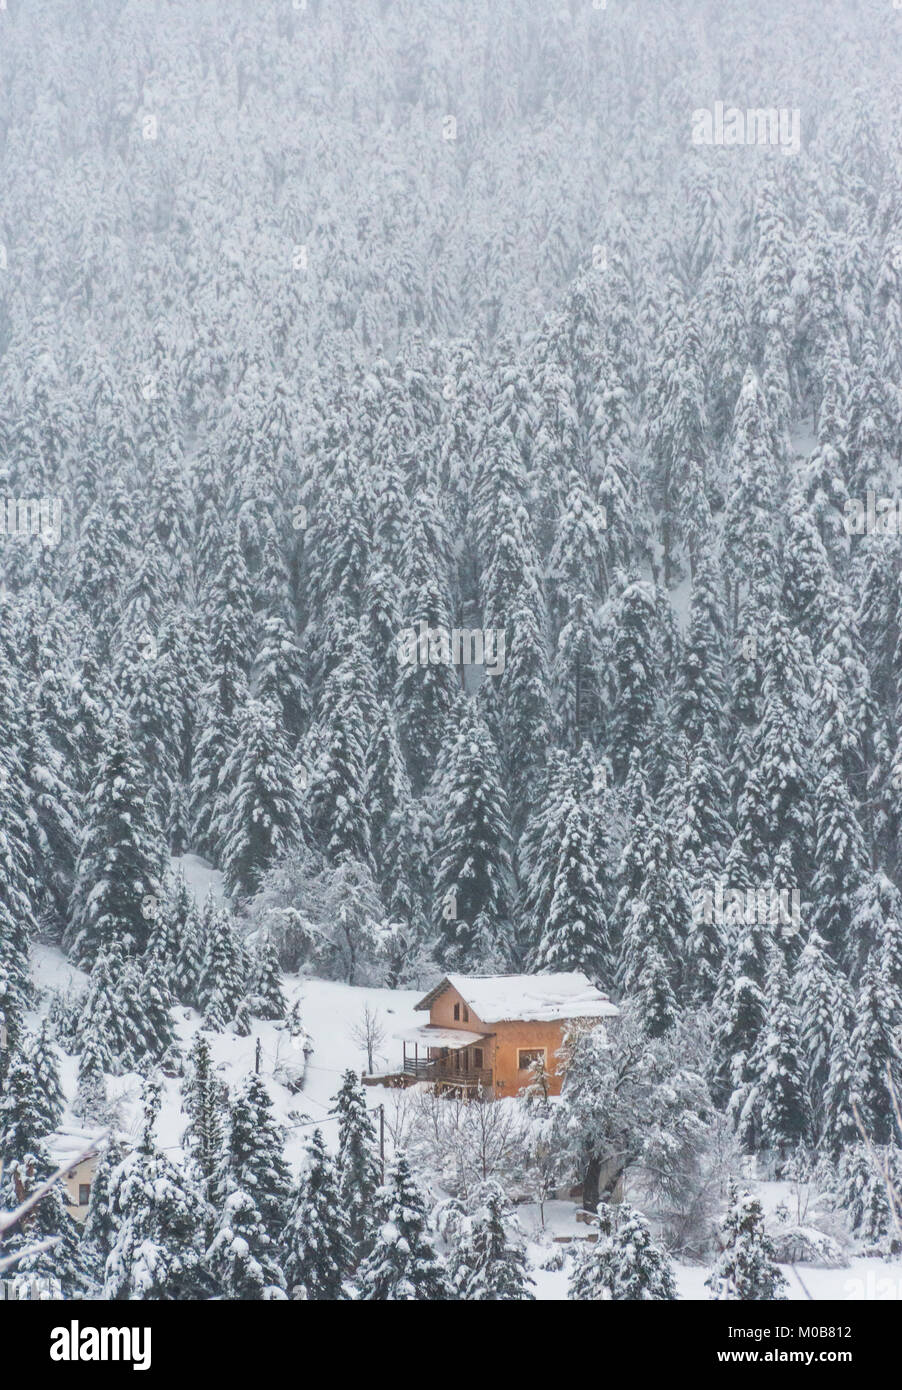 Une cabane en bois entouré de sapins couverts de neige épaisse Banque D'Images